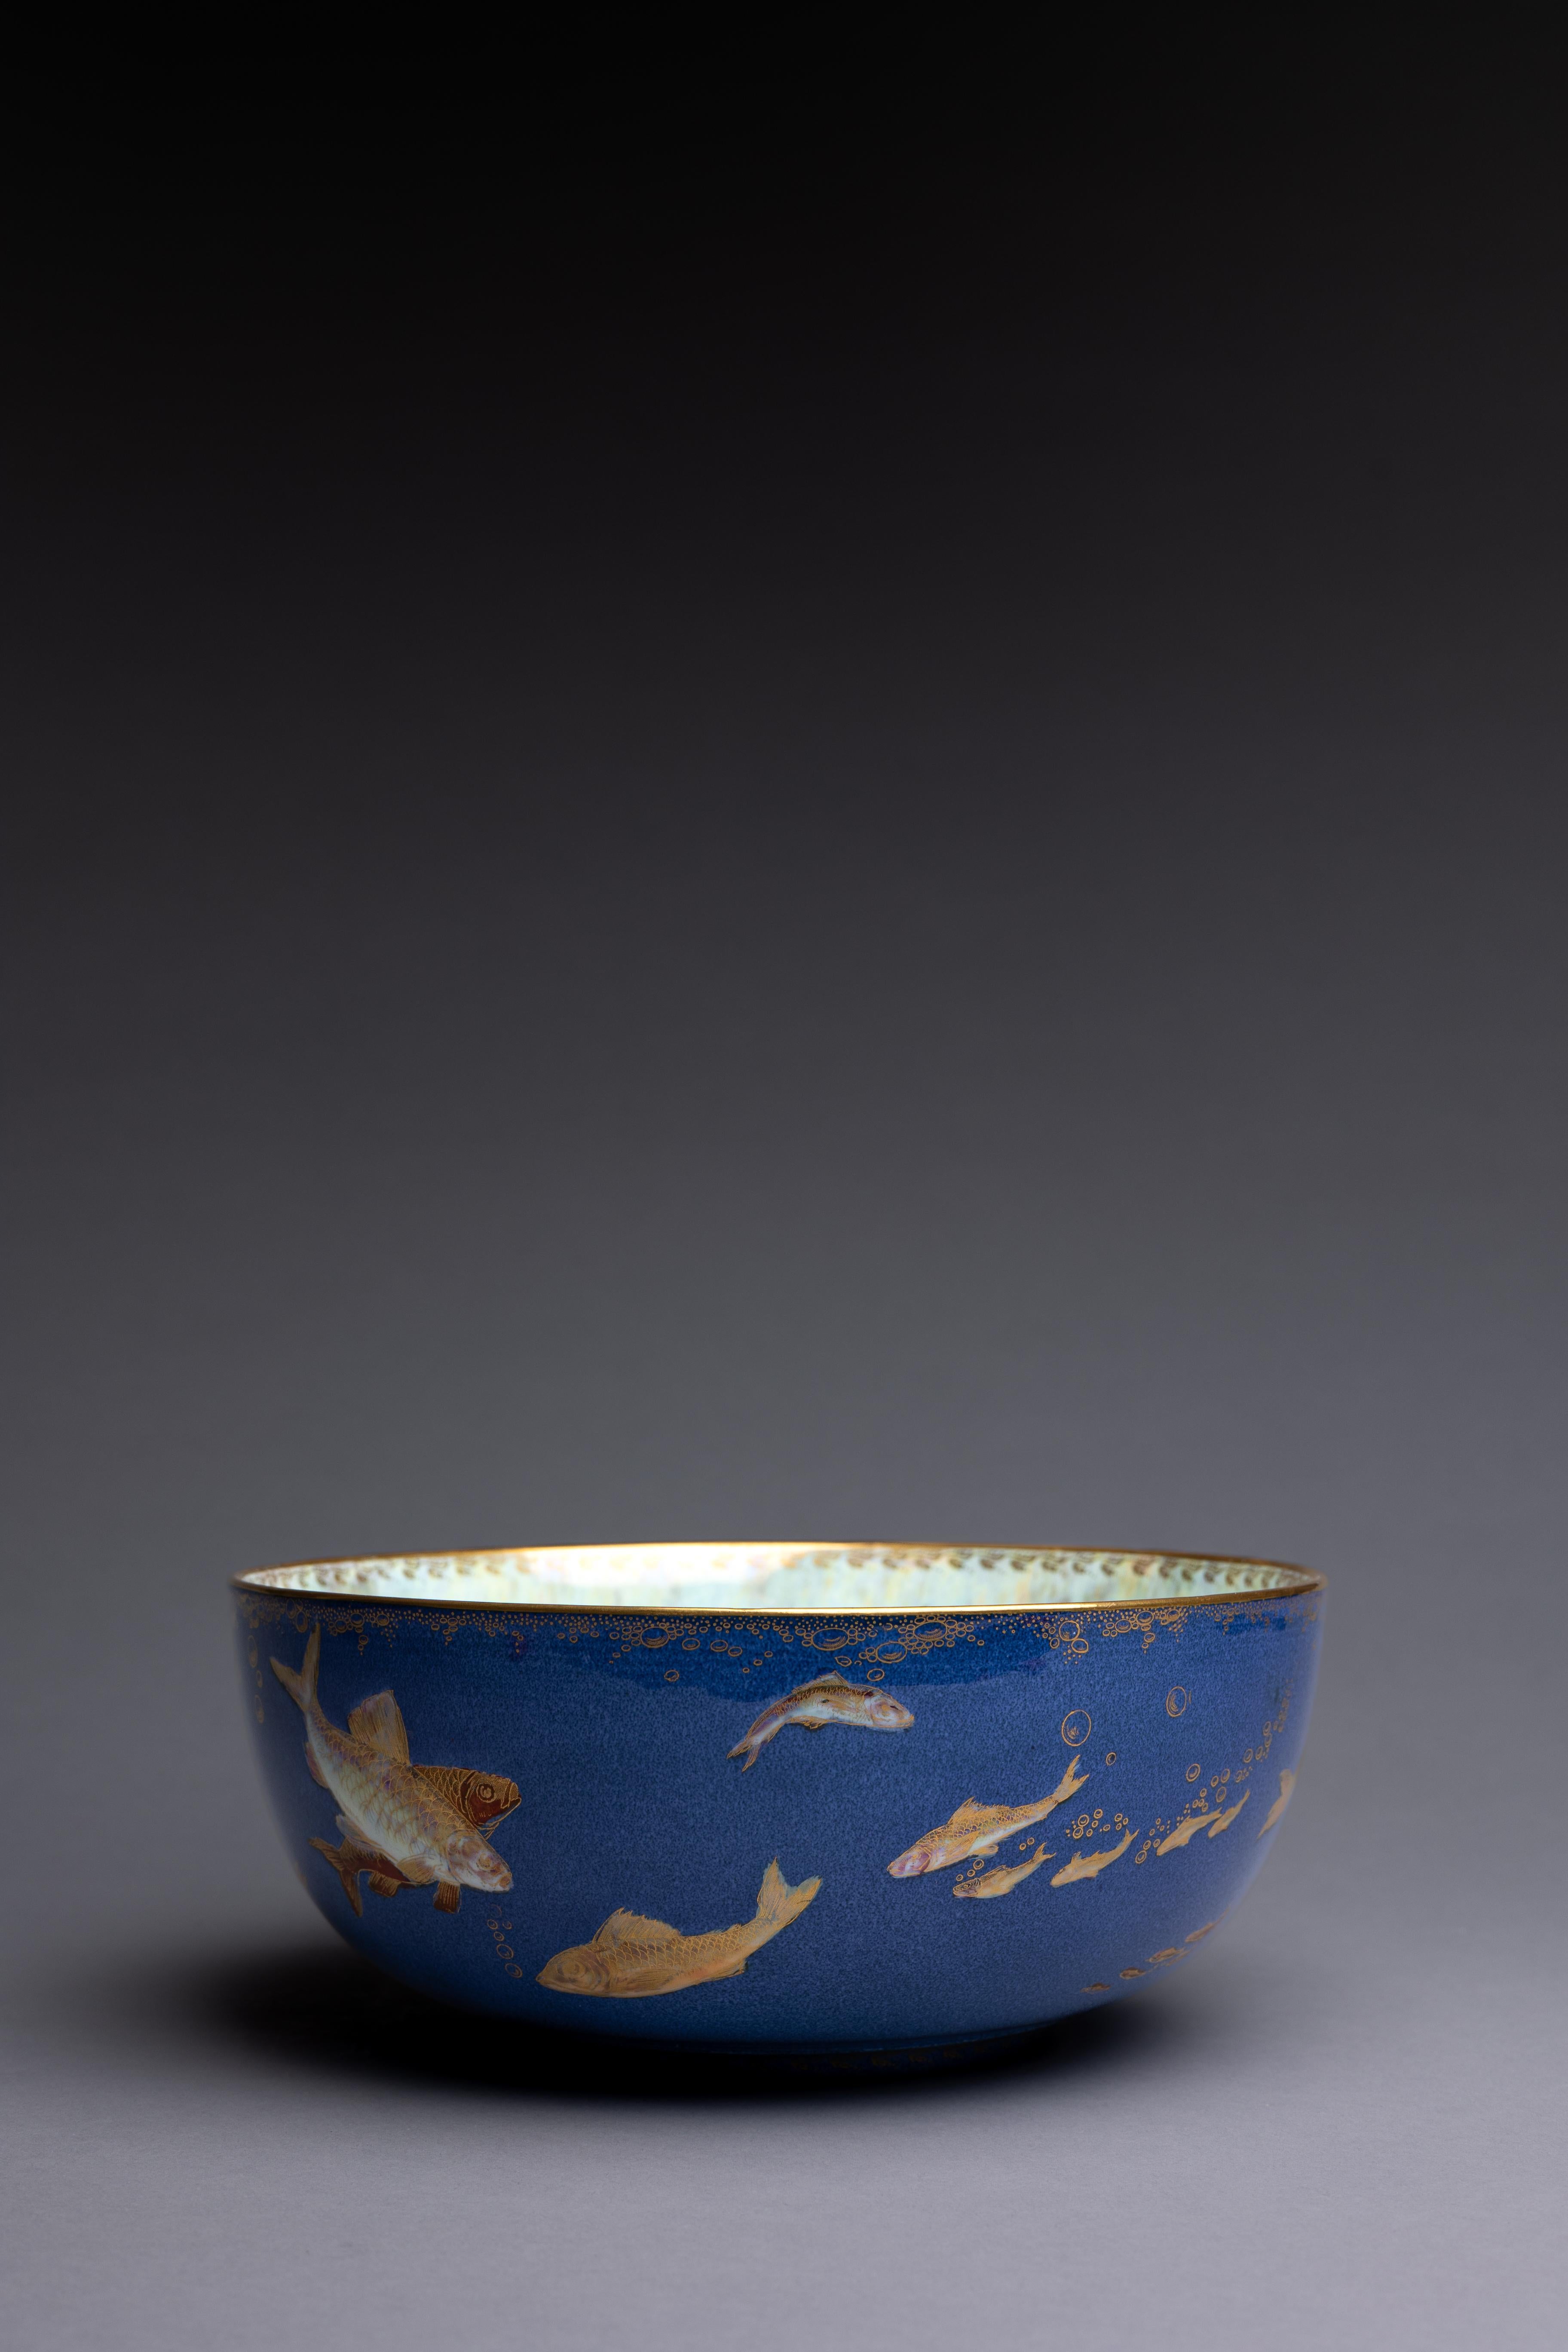 Un bol en porcelaine d'os bleu poudre conçu par Daisy Makeig-Jones pour Wedgwood vers 1915, joliment décoré d'un banc de poissons nageurs.

Ce superbe bocal à poisson bleu poudre est un hommage aux débuts de Daisy Makeig-Jones chez Wedgwood. En